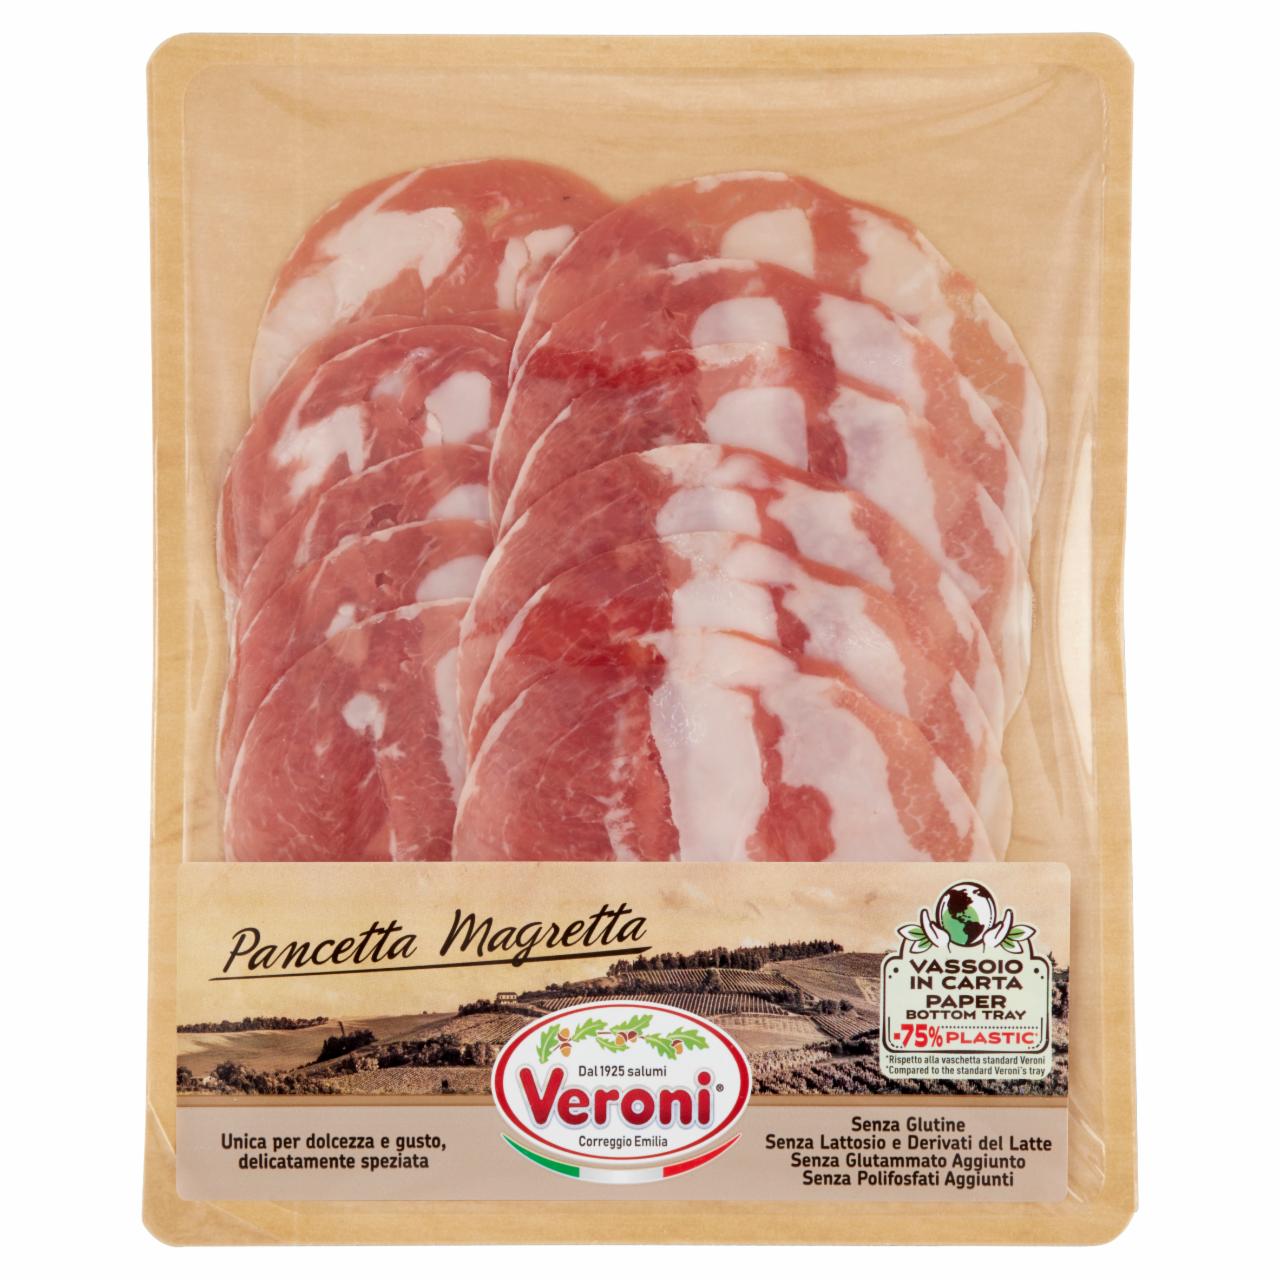 Képek - Veroni szeletelt baconos magretta 70 g